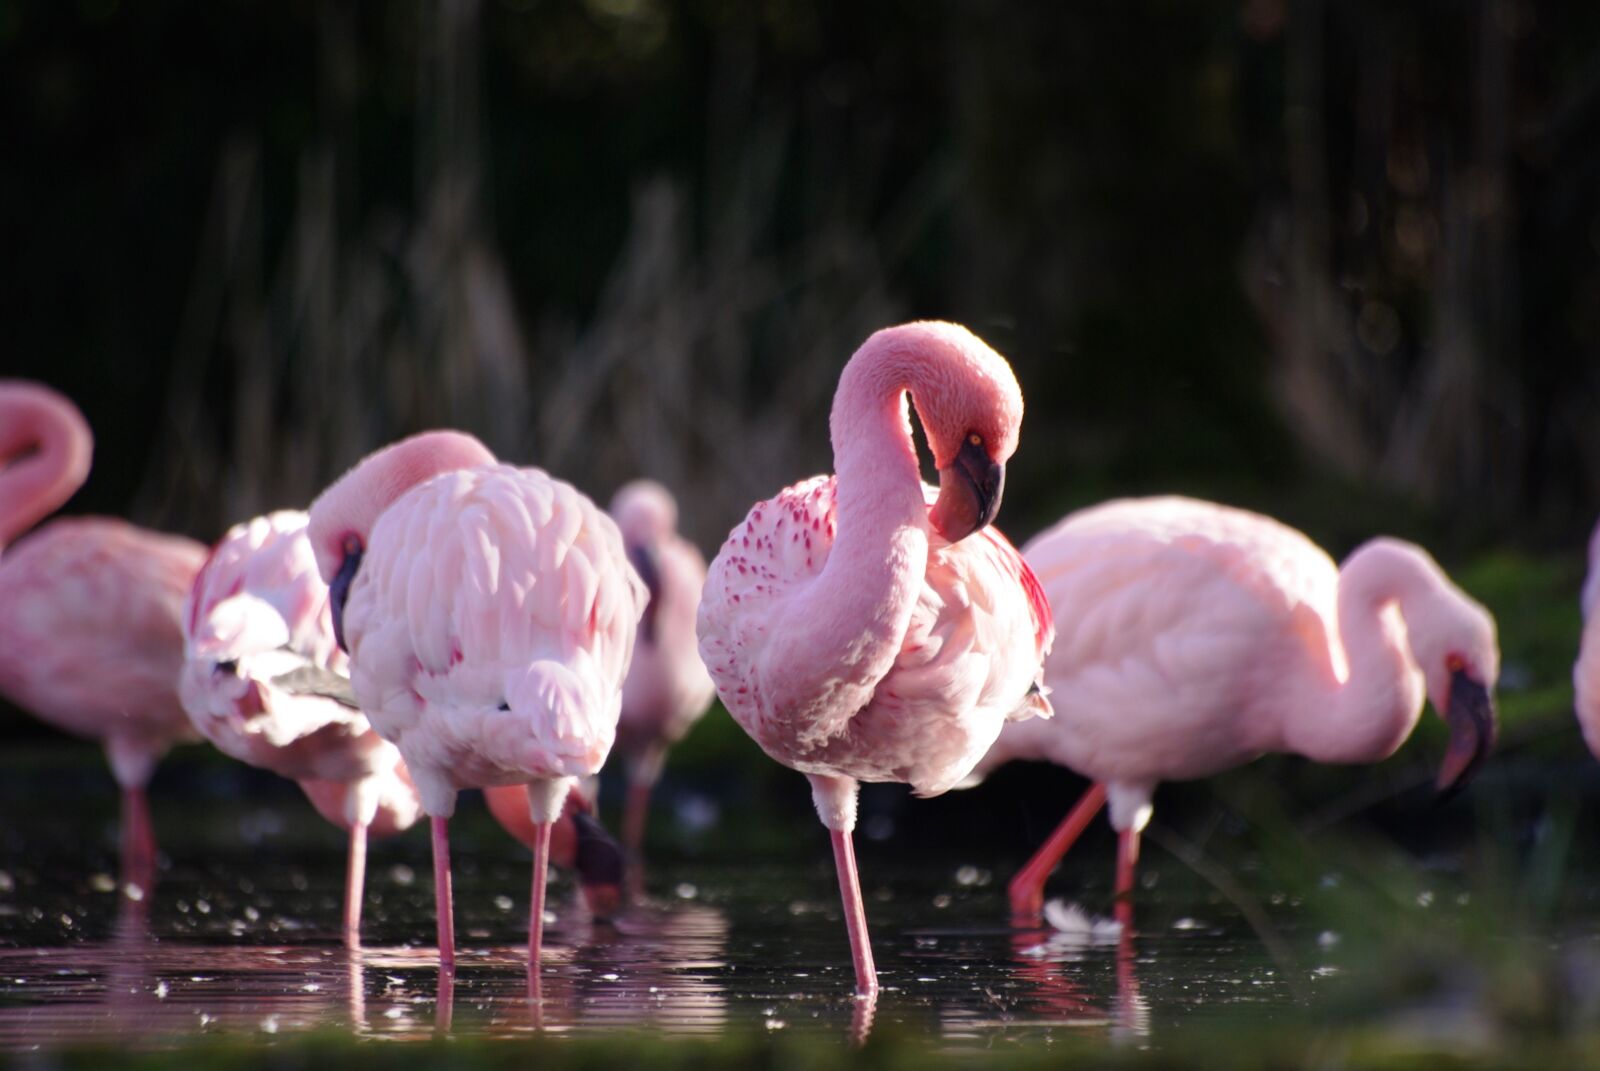 Pentax K10D sample photo. Animals, flamingos, nature photography